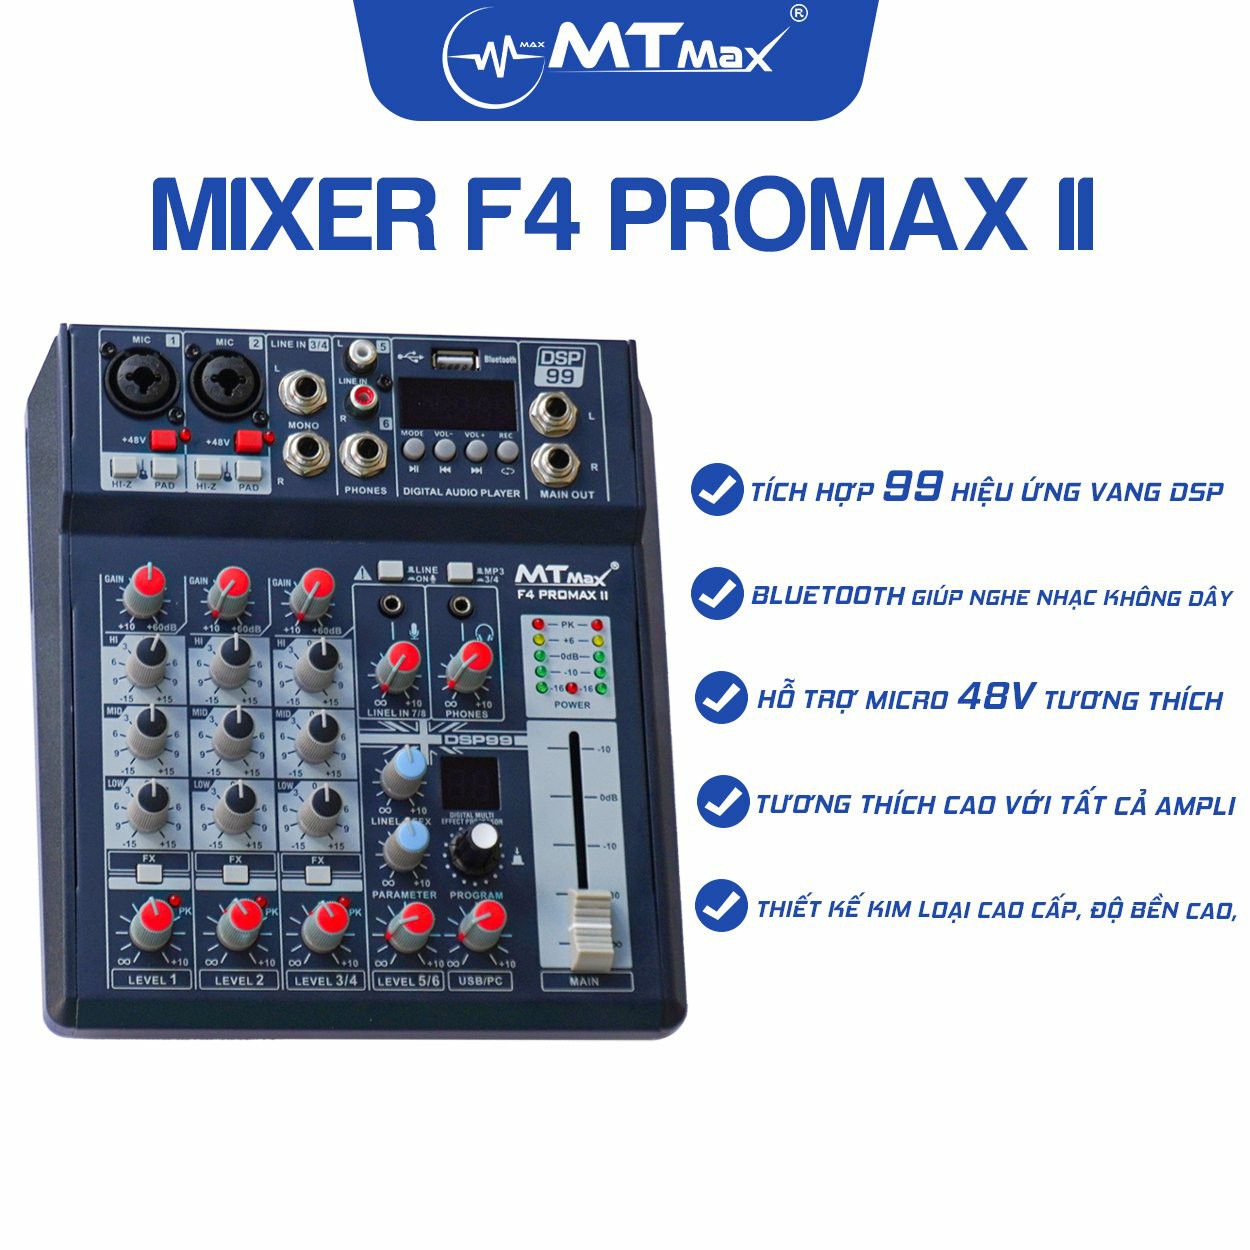 Bàn trộn Mixer MTMax F4 ProMax II - 99 chế độ vang số DSP - 4 kênh, 2 màn hình led hiển thị - Có Bluetooth, nguồn 48V cho micro condenser - Chuyển đổi thành sound card thu âm chuyên nghiệp - Dùng được với loa kéo, amply, dàn karaoke - Hàng chính hãng